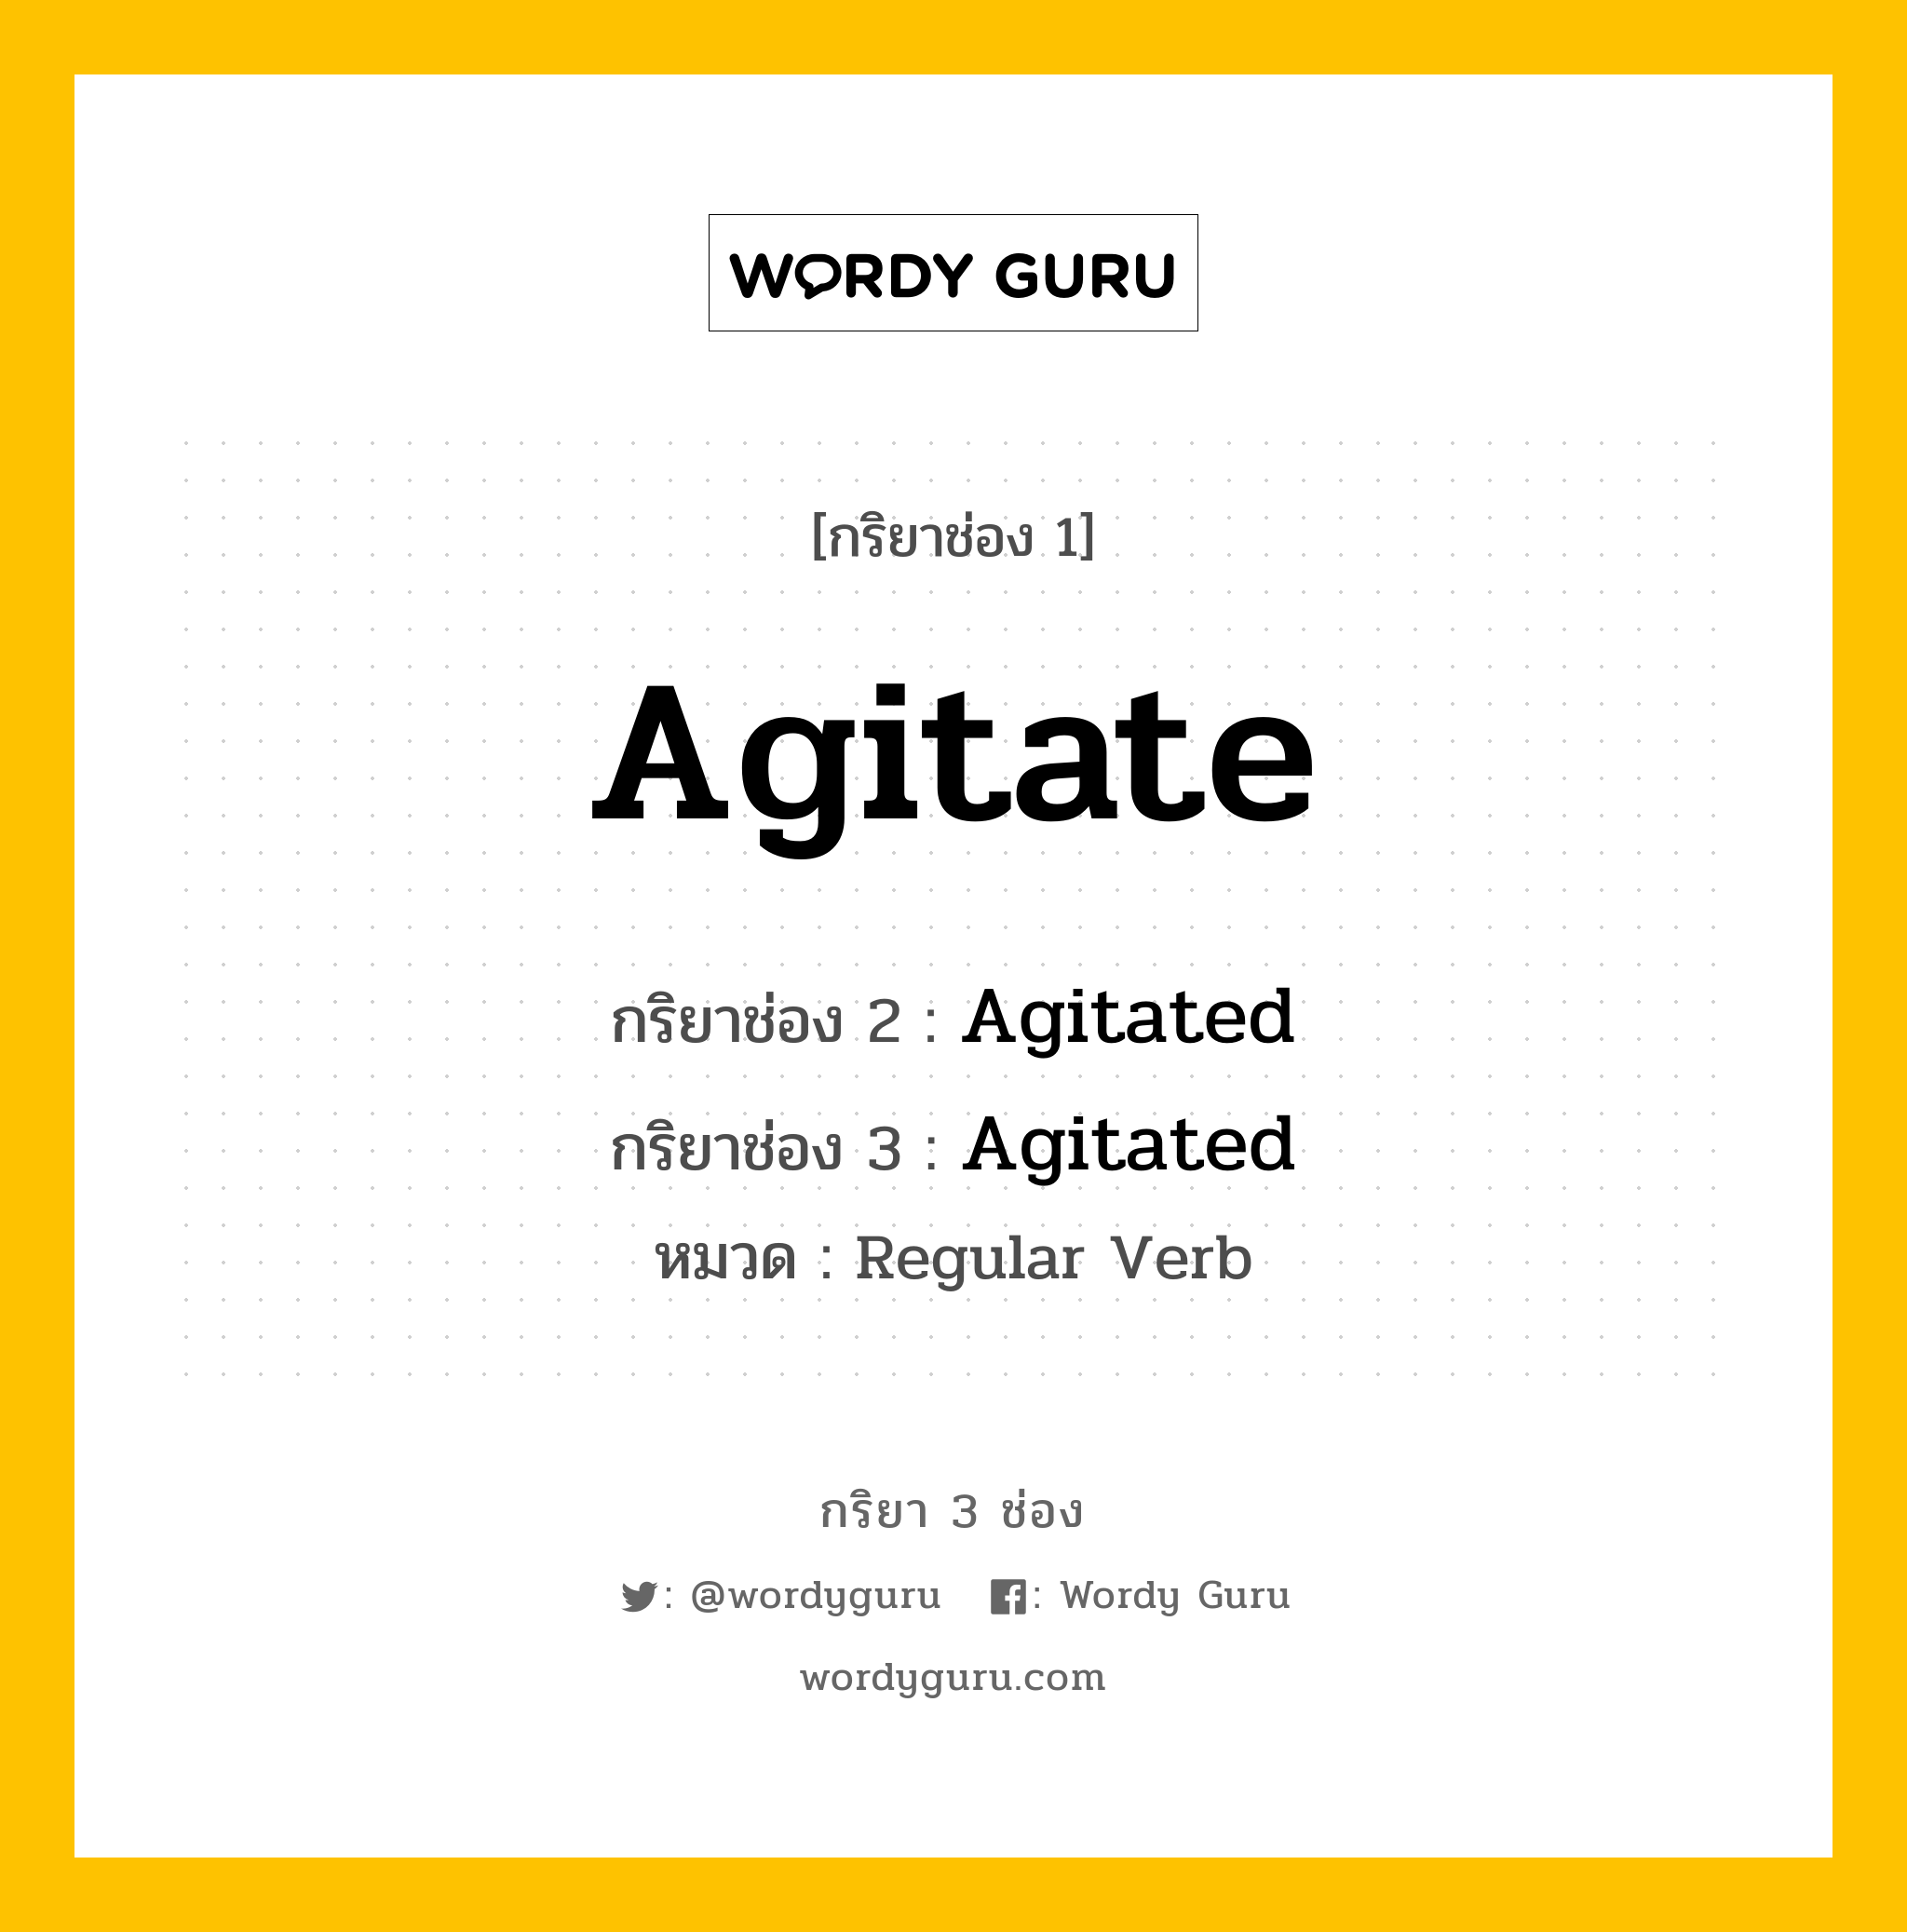 Agitate มีกริยา 3 ช่องอะไรบ้าง? คำศัพท์ในกลุ่มประเภท Regular Verb, กริยาช่อง 1 Agitate กริยาช่อง 2 Agitated กริยาช่อง 3 Agitated หมวด Regular Verb หมวด Regular Verb